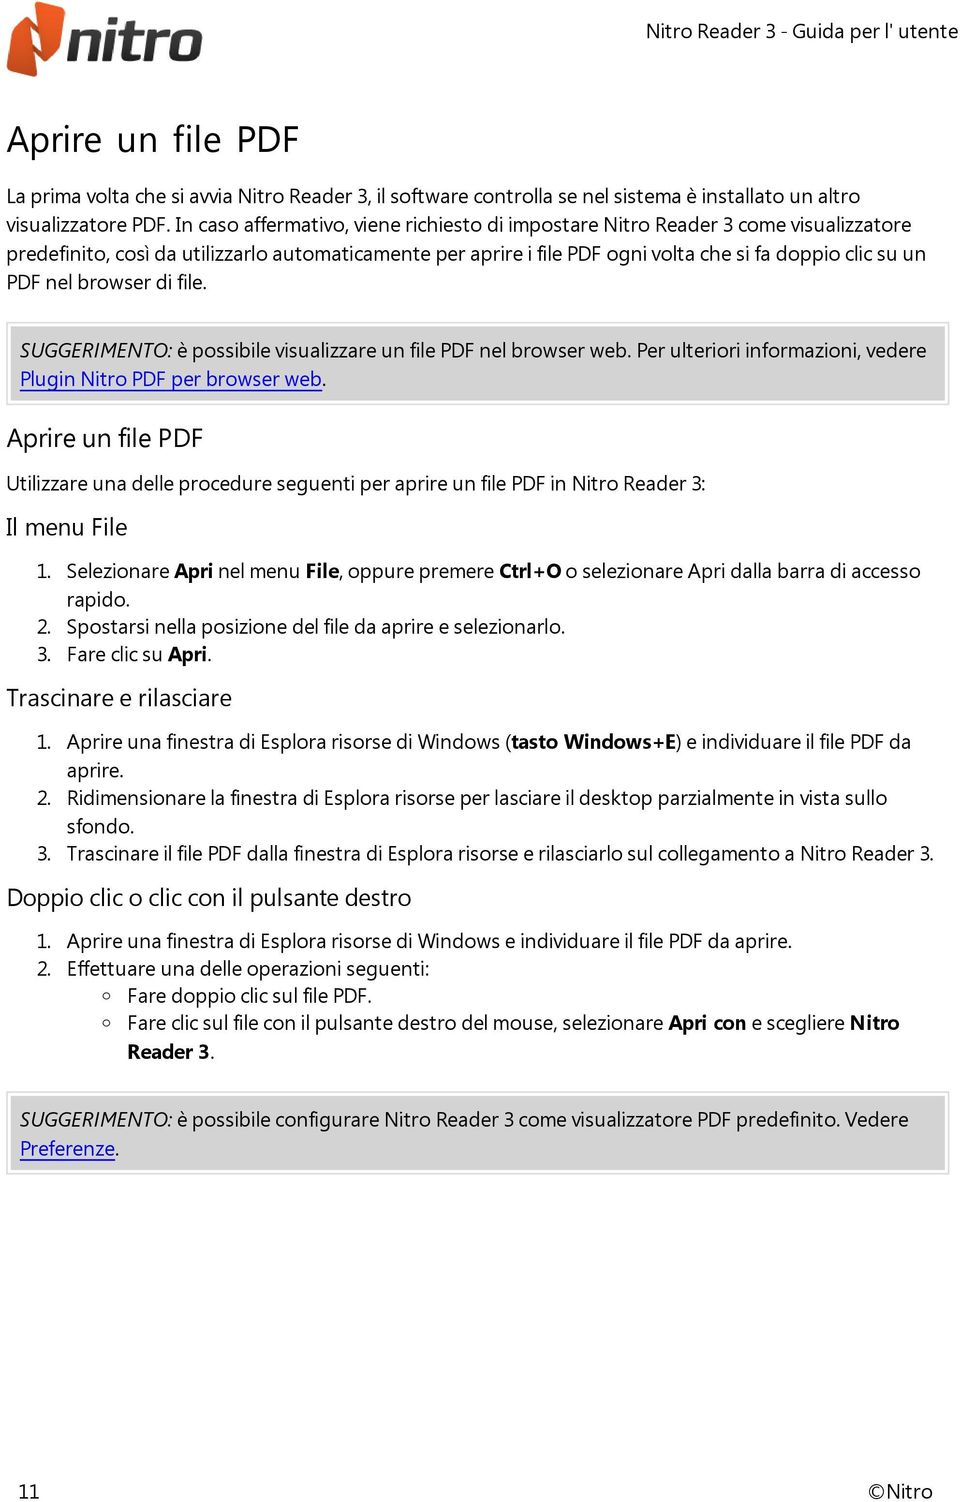 nel browser di file. SUGGERIMENTO: è possibile visualizzare un file PDF nel browser web. Per ulteriori informazioni, vedere Plugin Nitro PDF per browser web.